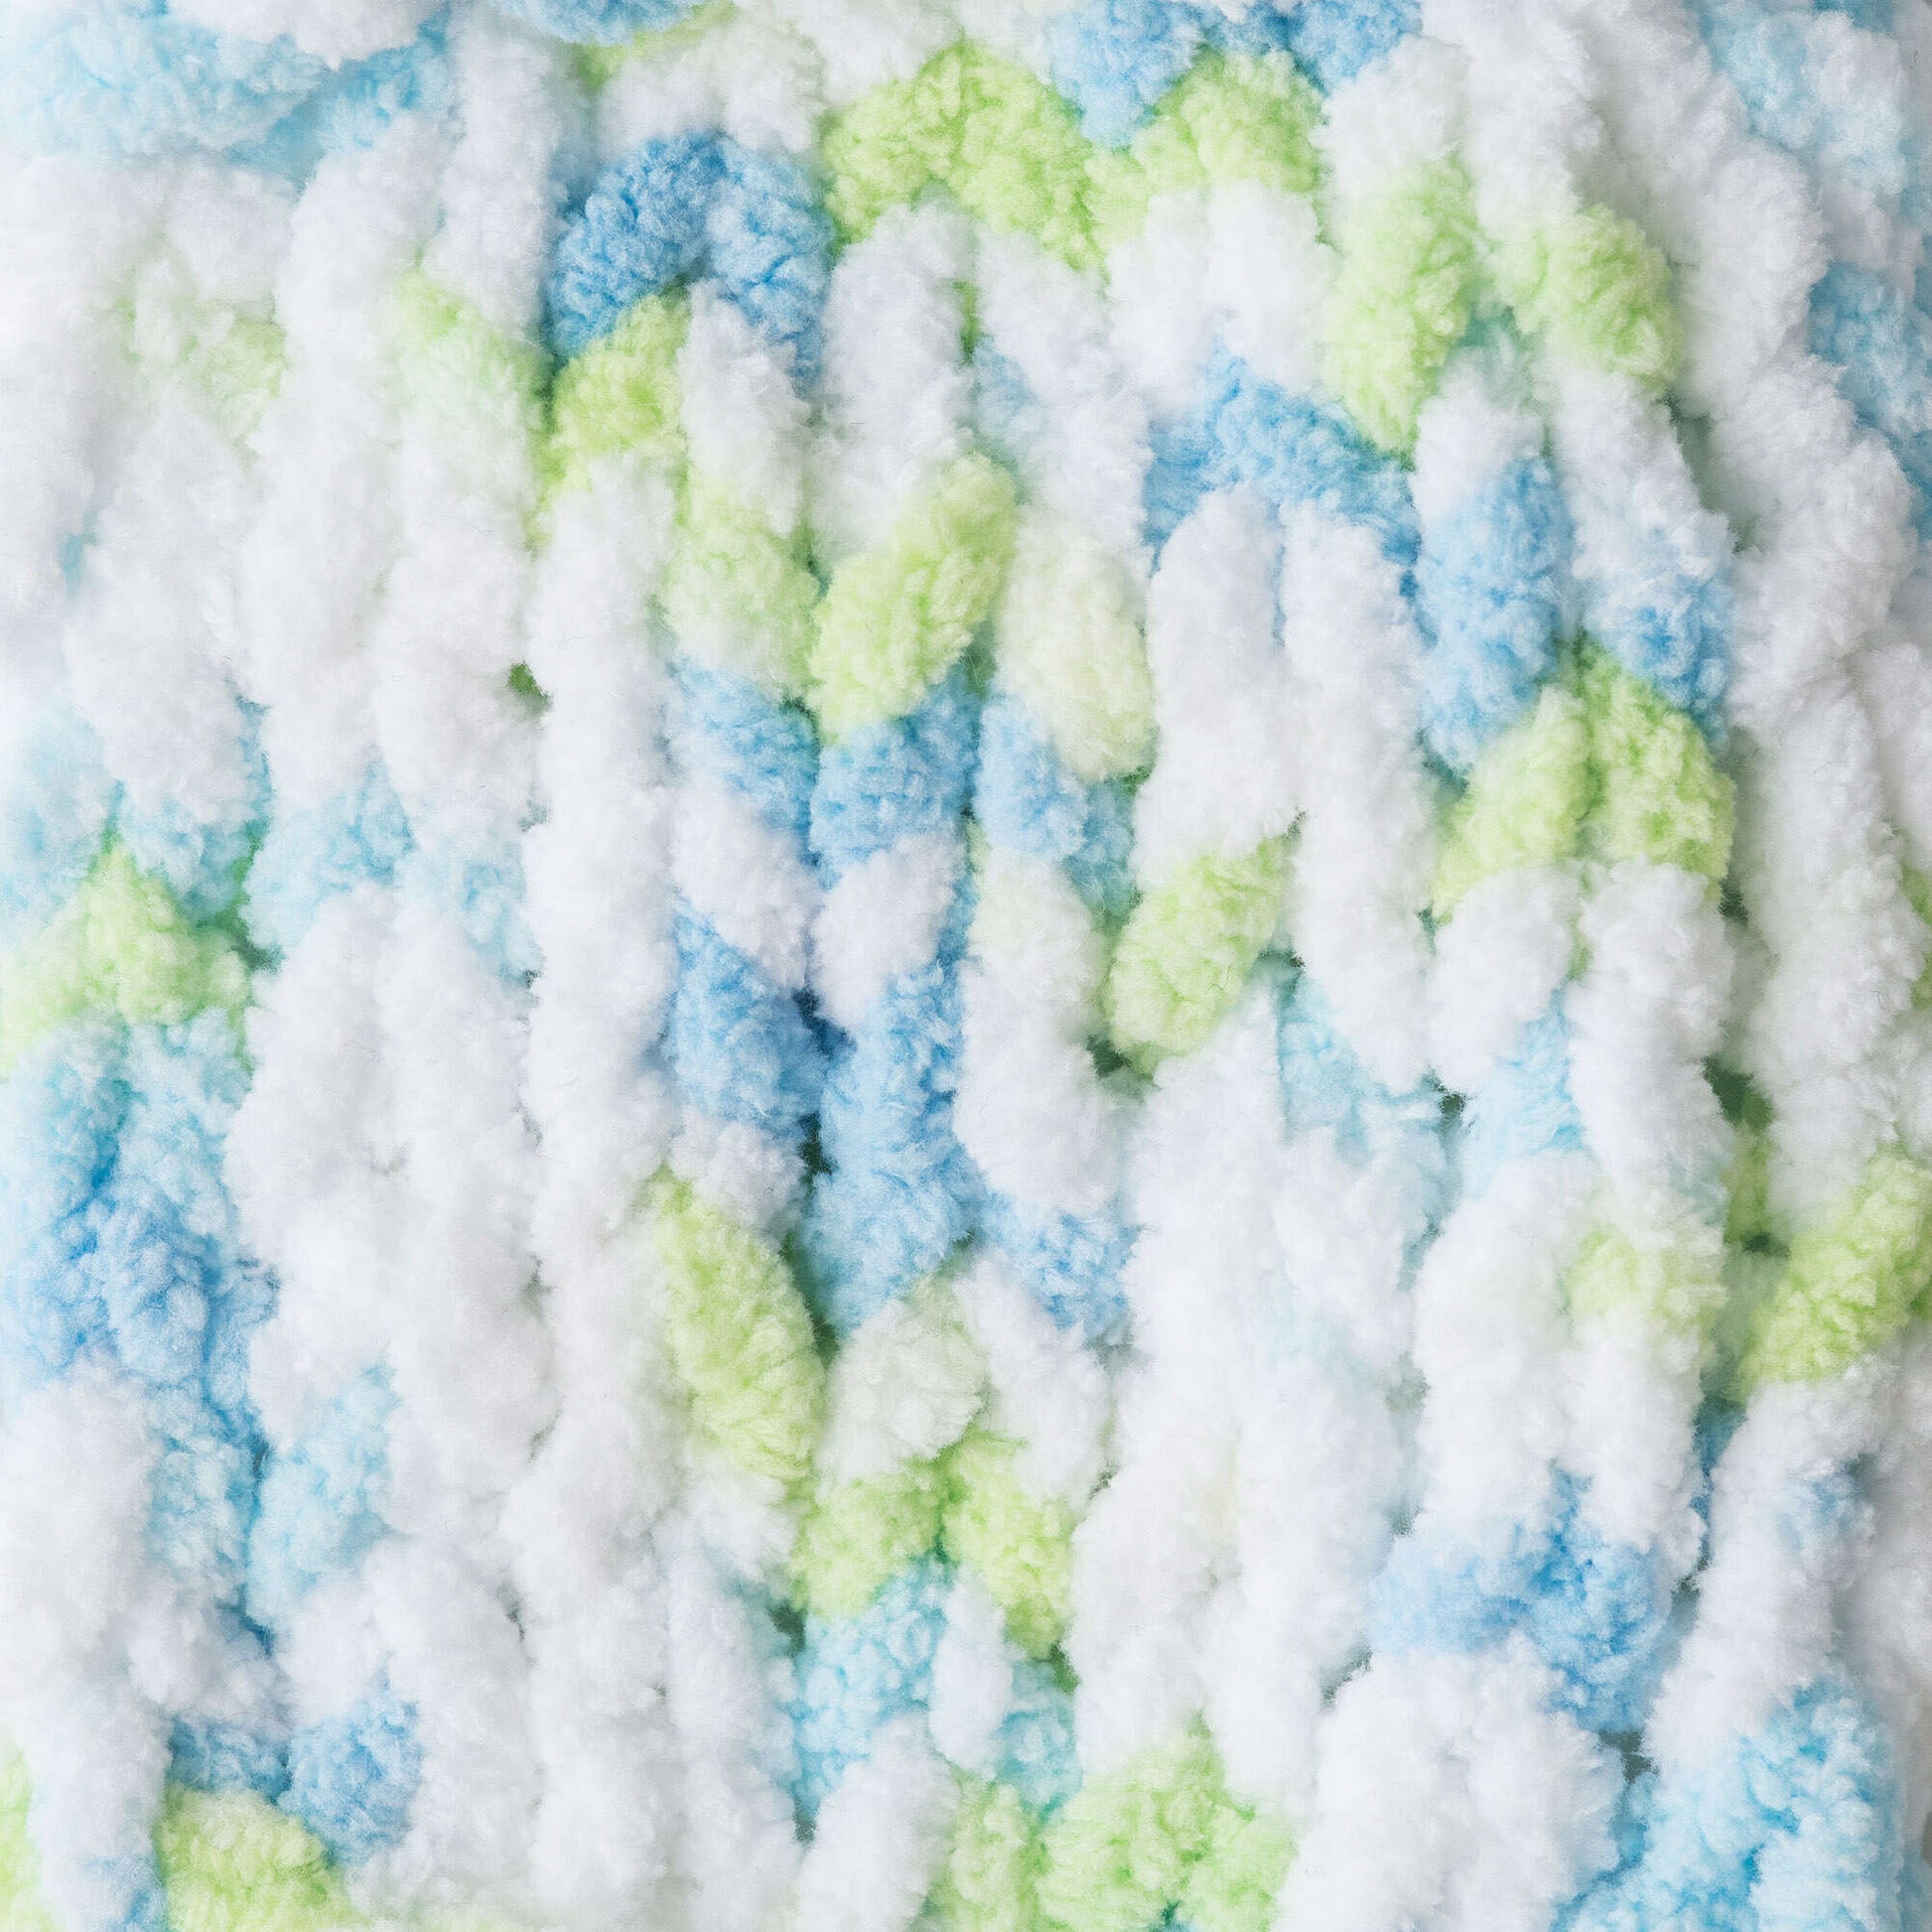 Bernat Baby Blanket Yarn 100g – Lilac – Yarns by Macpherson